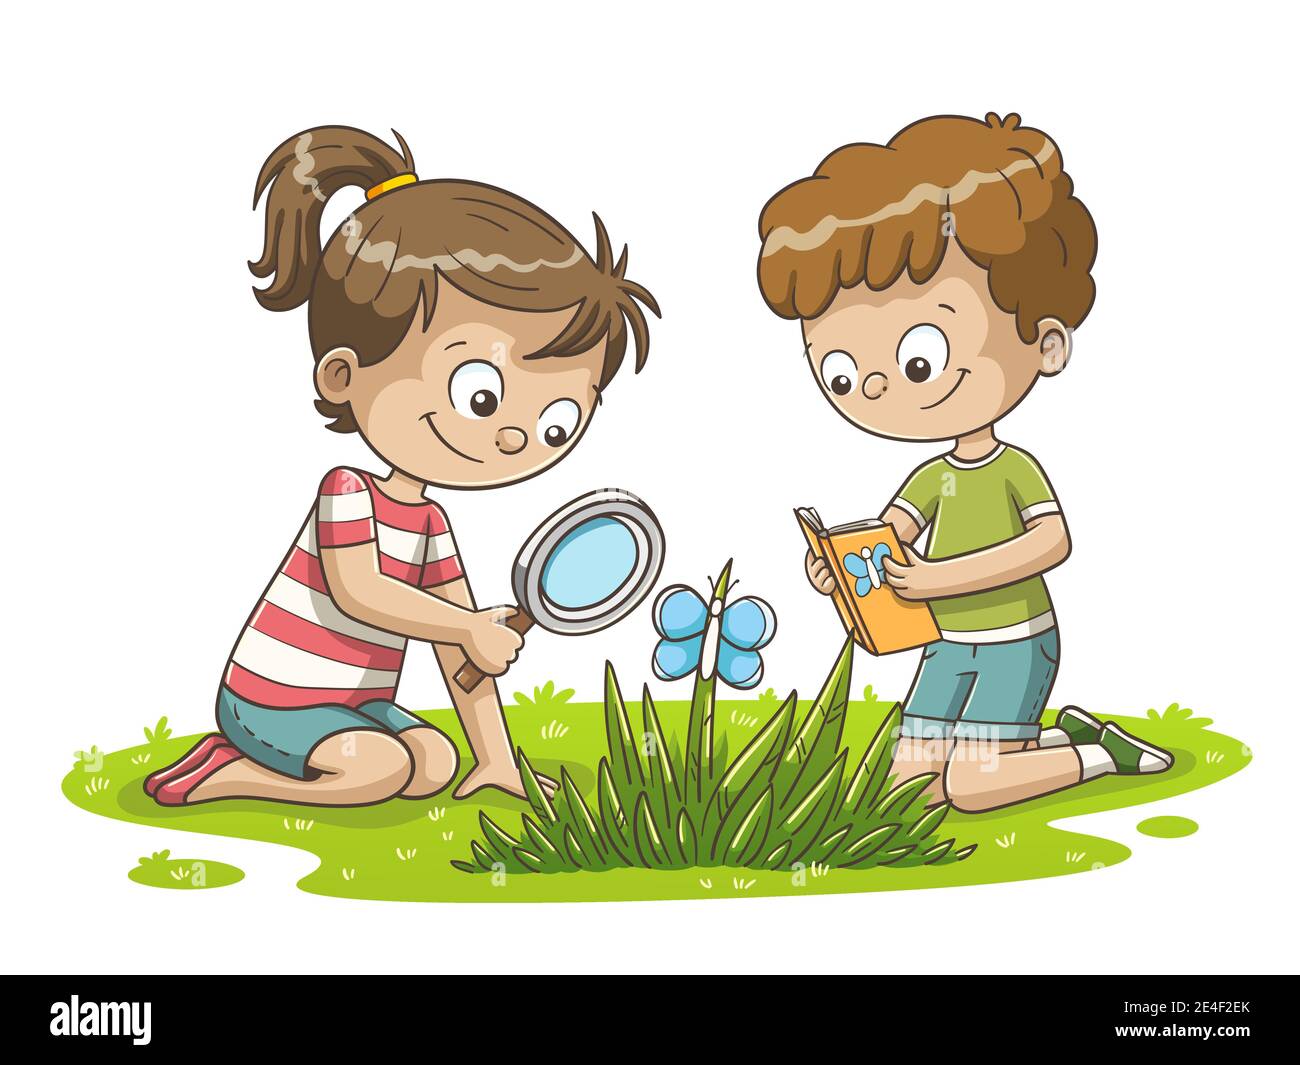 Junge und Mädchen beobachten einen Schmetterling. Handgezeichnete Vektorgrafik mit separaten Ebenen. Stock Vektor